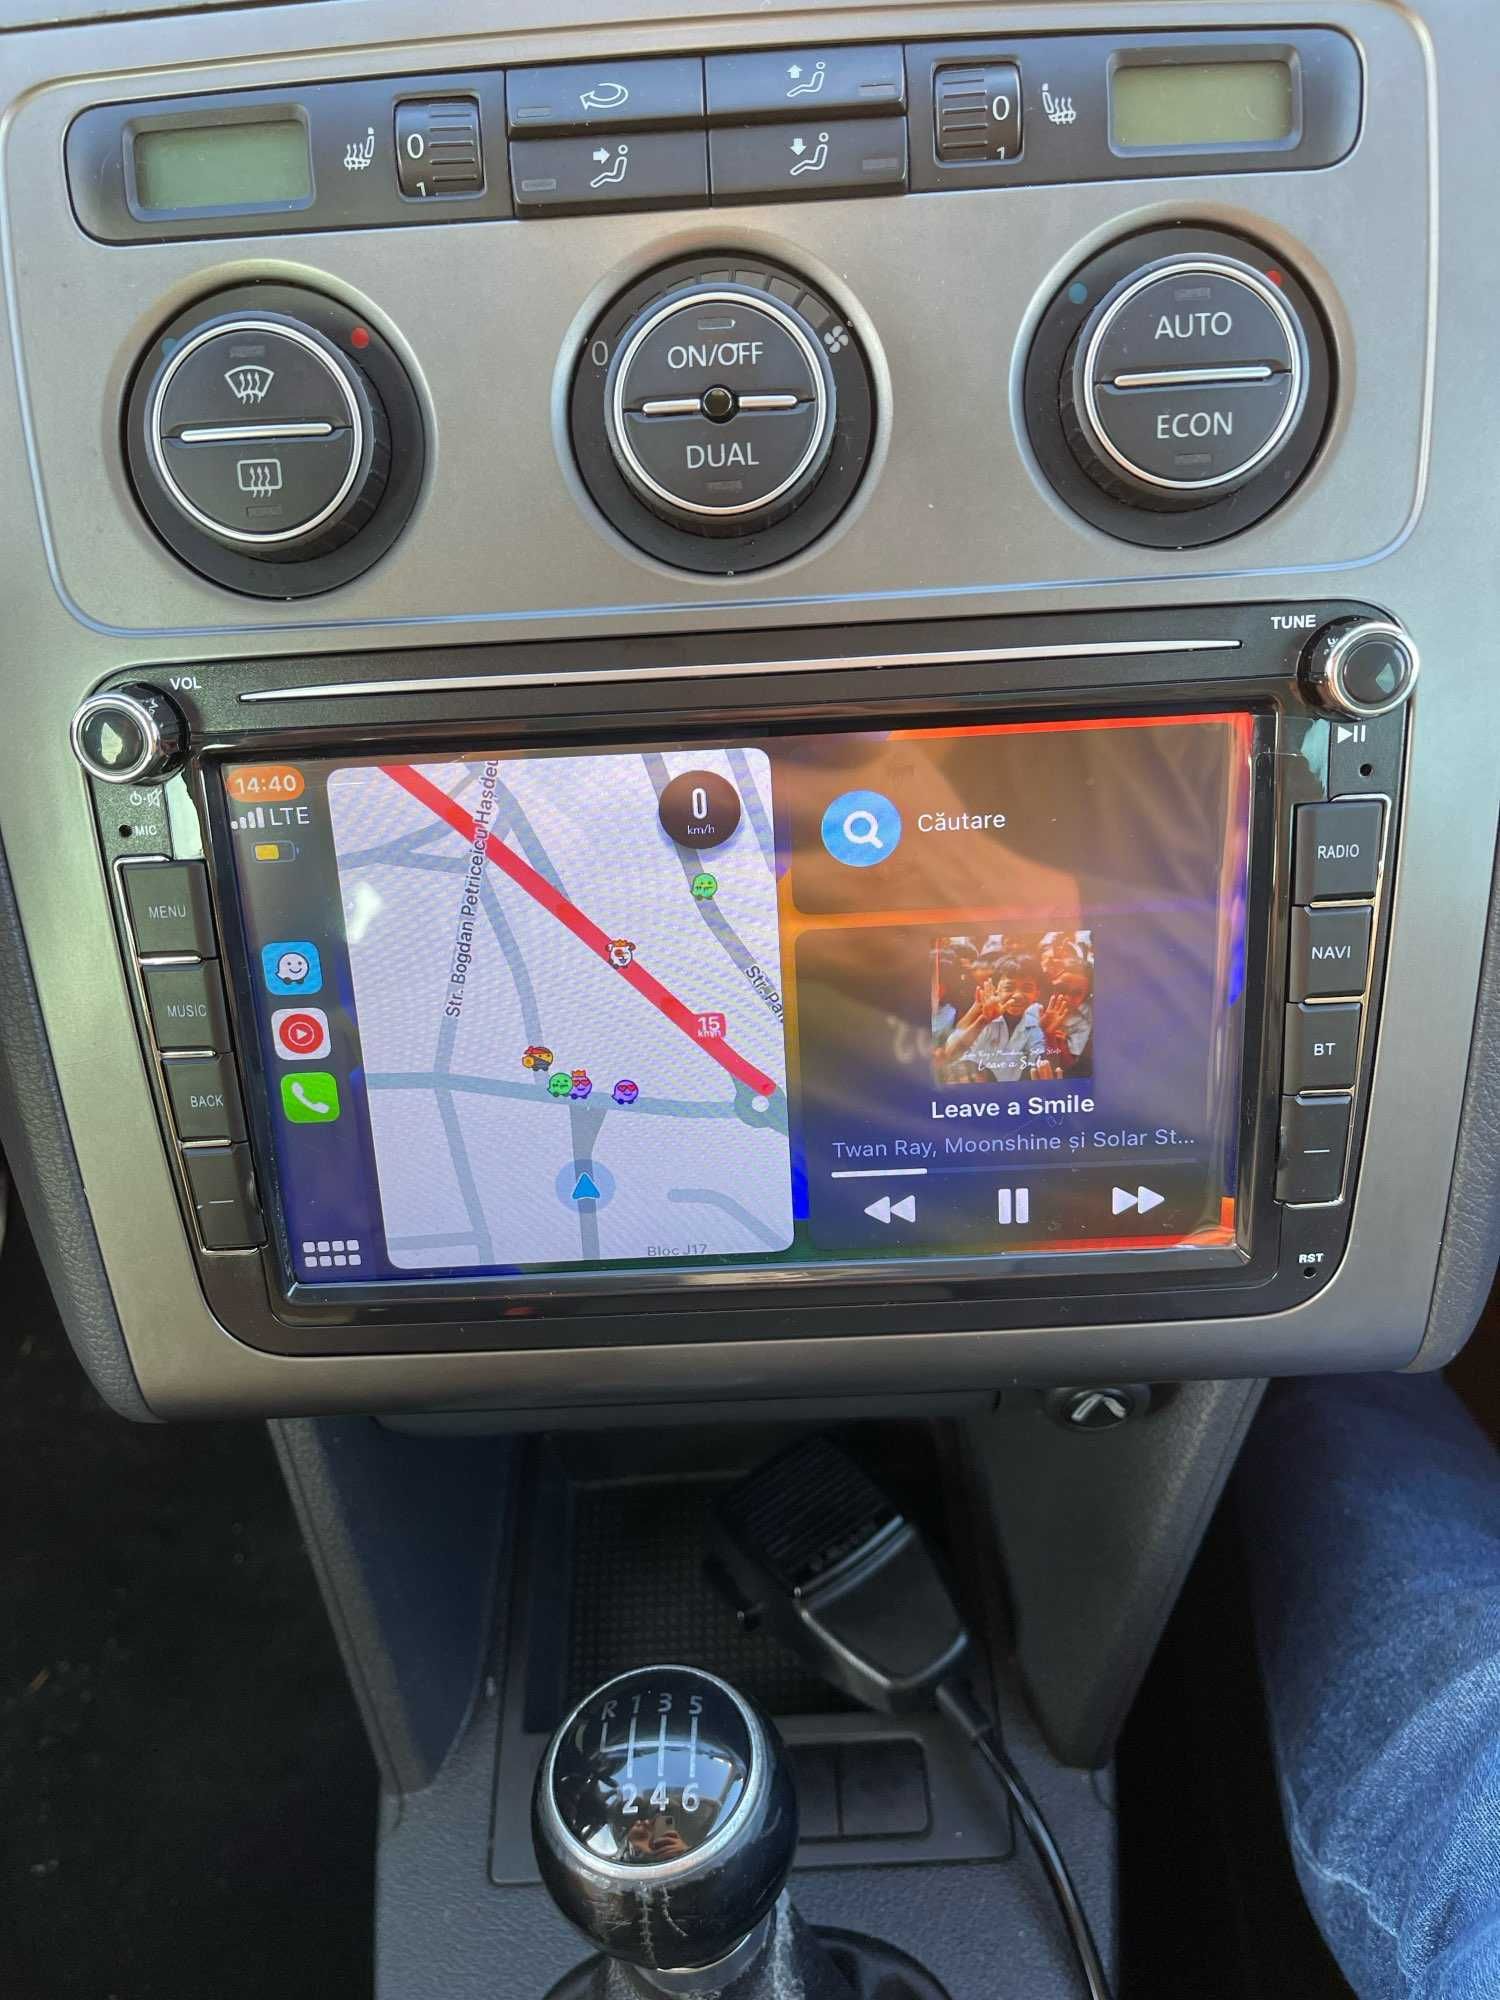 PROMOTIE - Navigatie GPS Android Dedicata VW Seat Skoda 4GB RAM